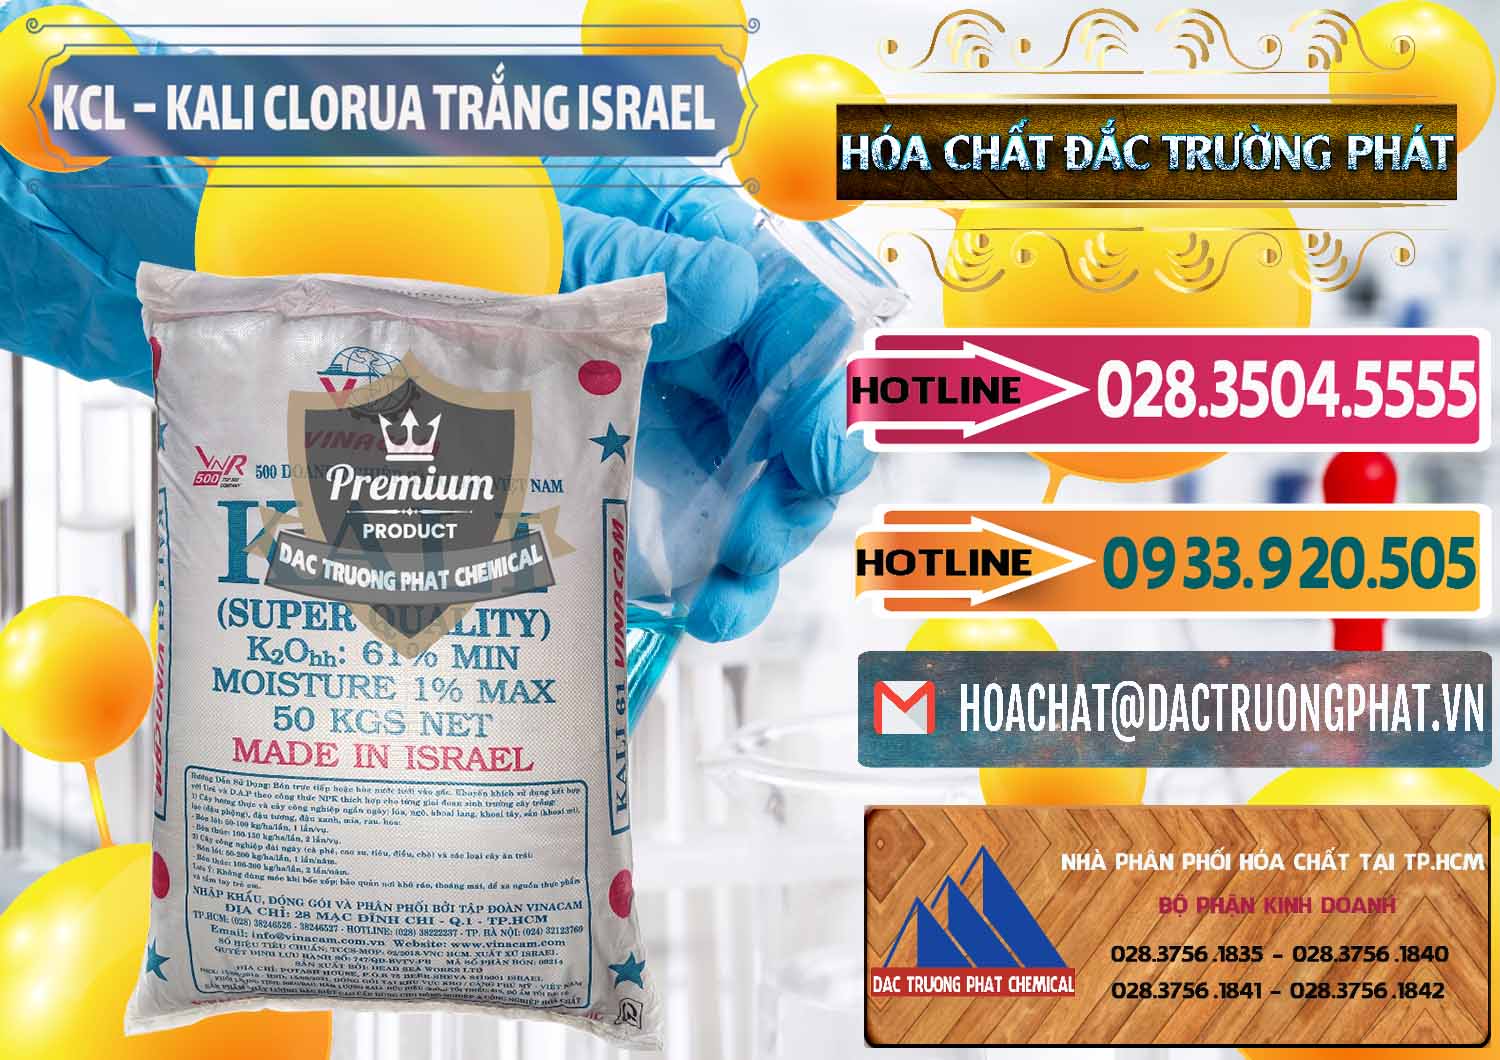 Nơi chuyên cung cấp _ bán KCL – Kali Clorua Trắng Israel - 0087 - Nhà nhập khẩu - phân phối hóa chất tại TP.HCM - dactruongphat.vn